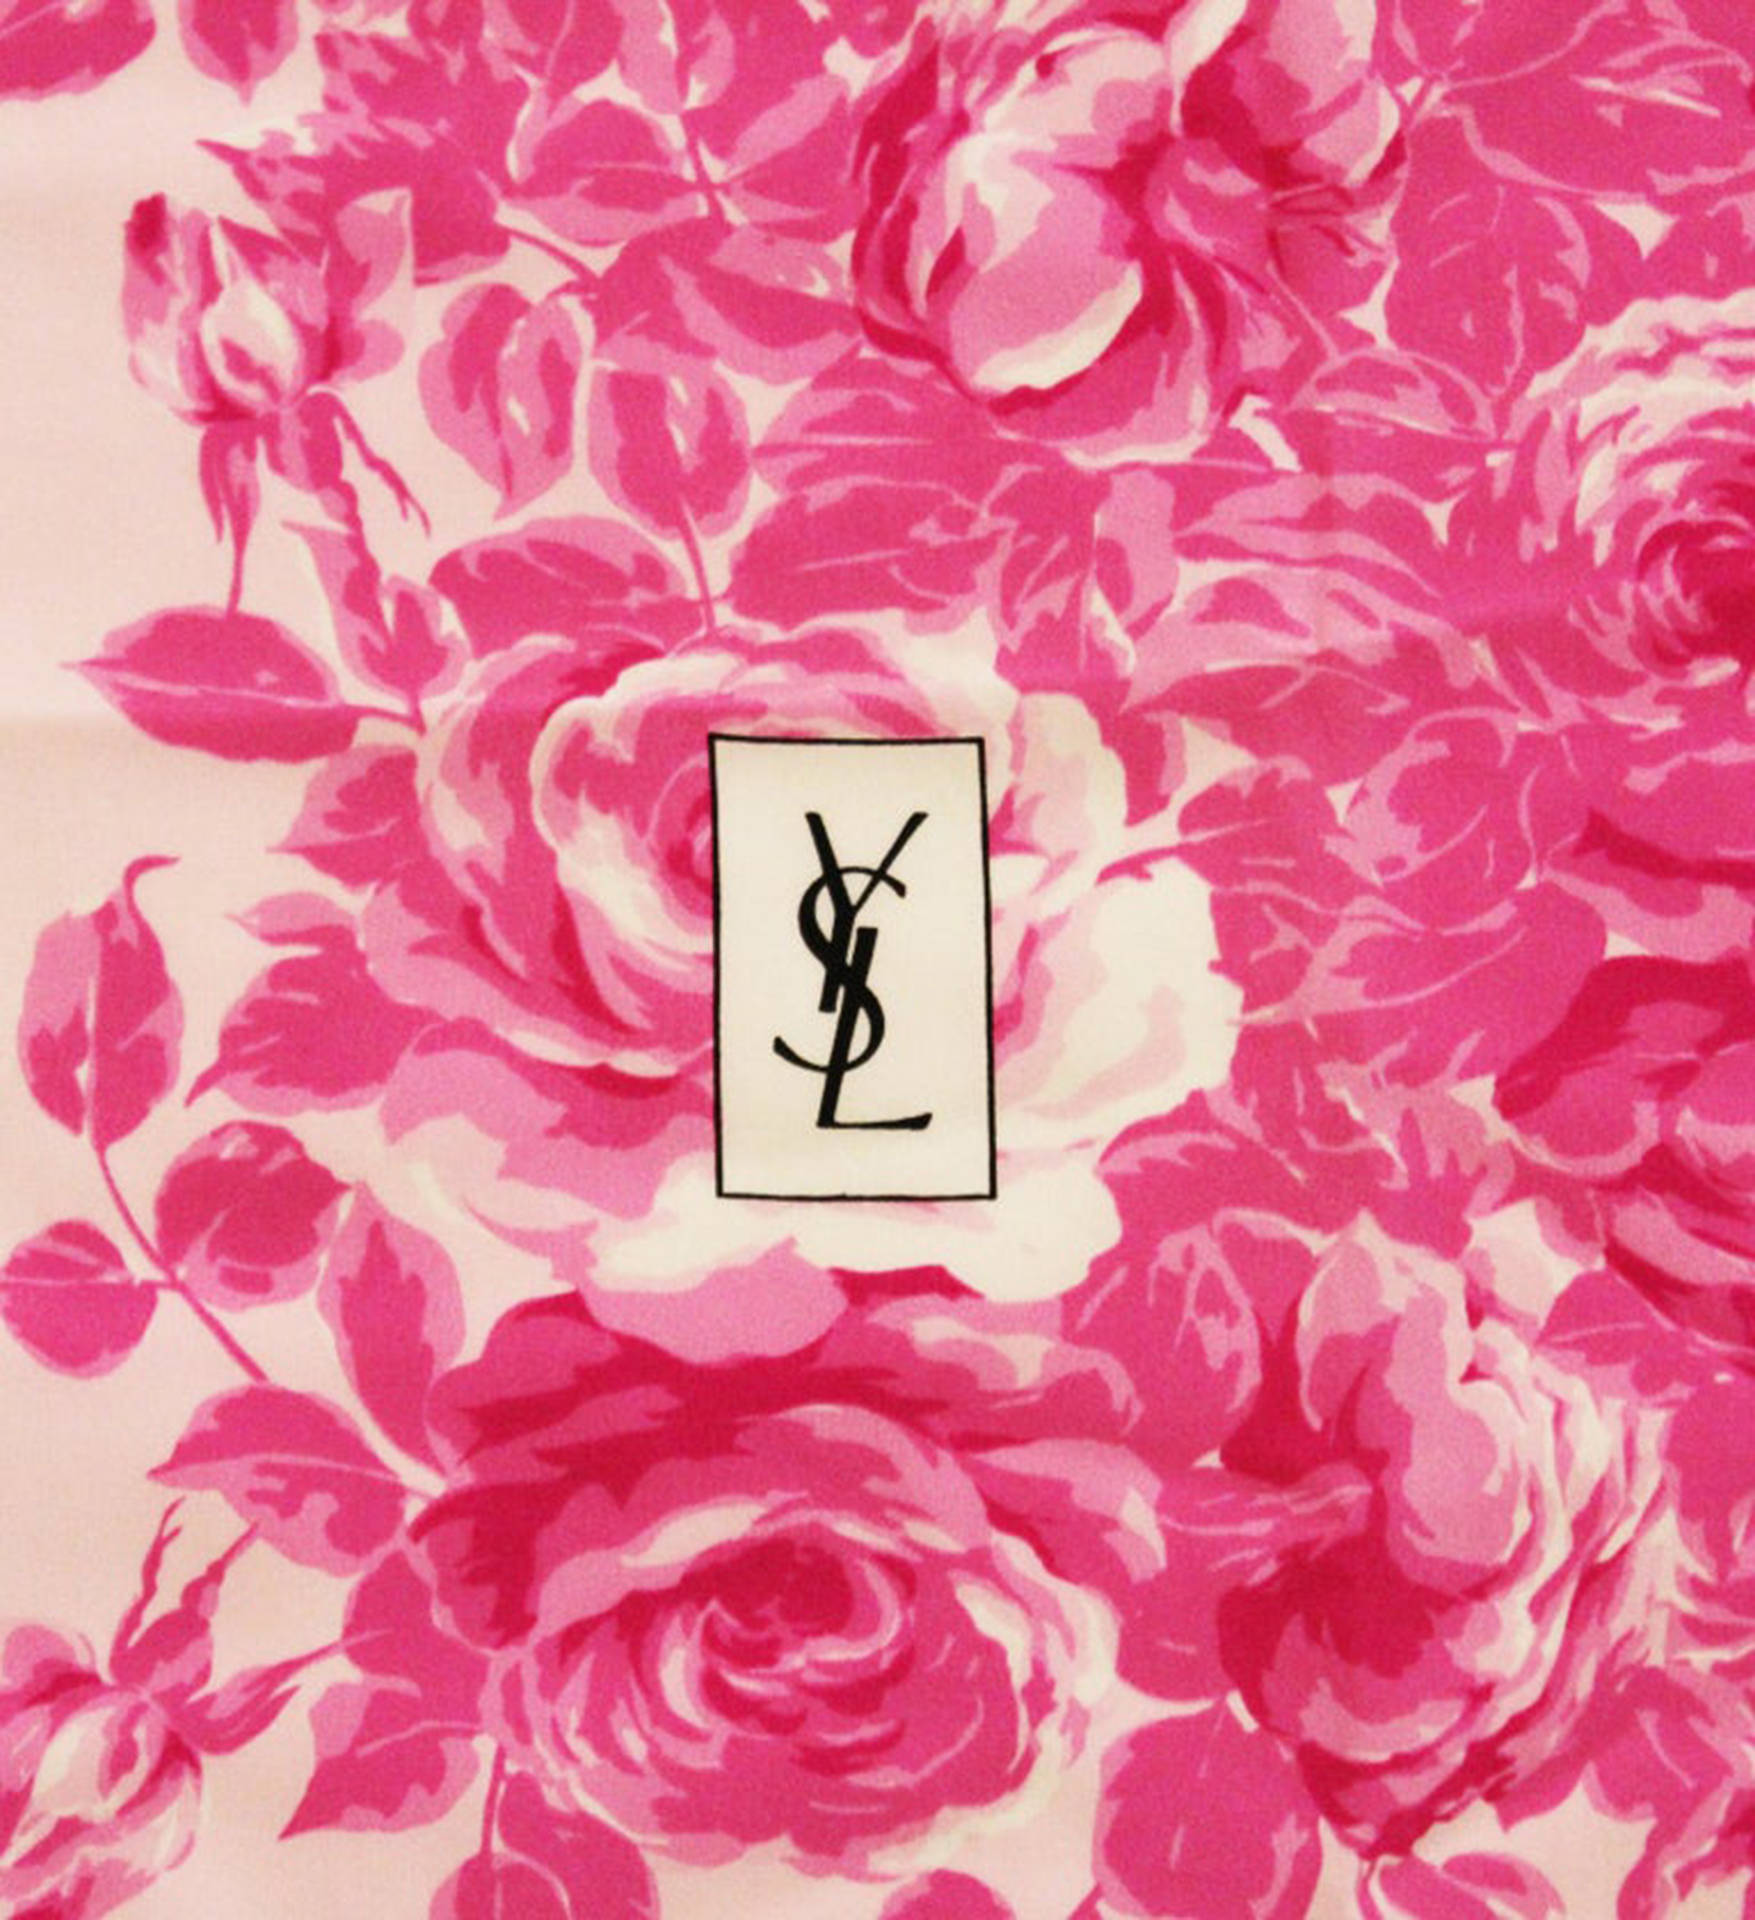 Ysl Logo Rose Scarf Wallpaper